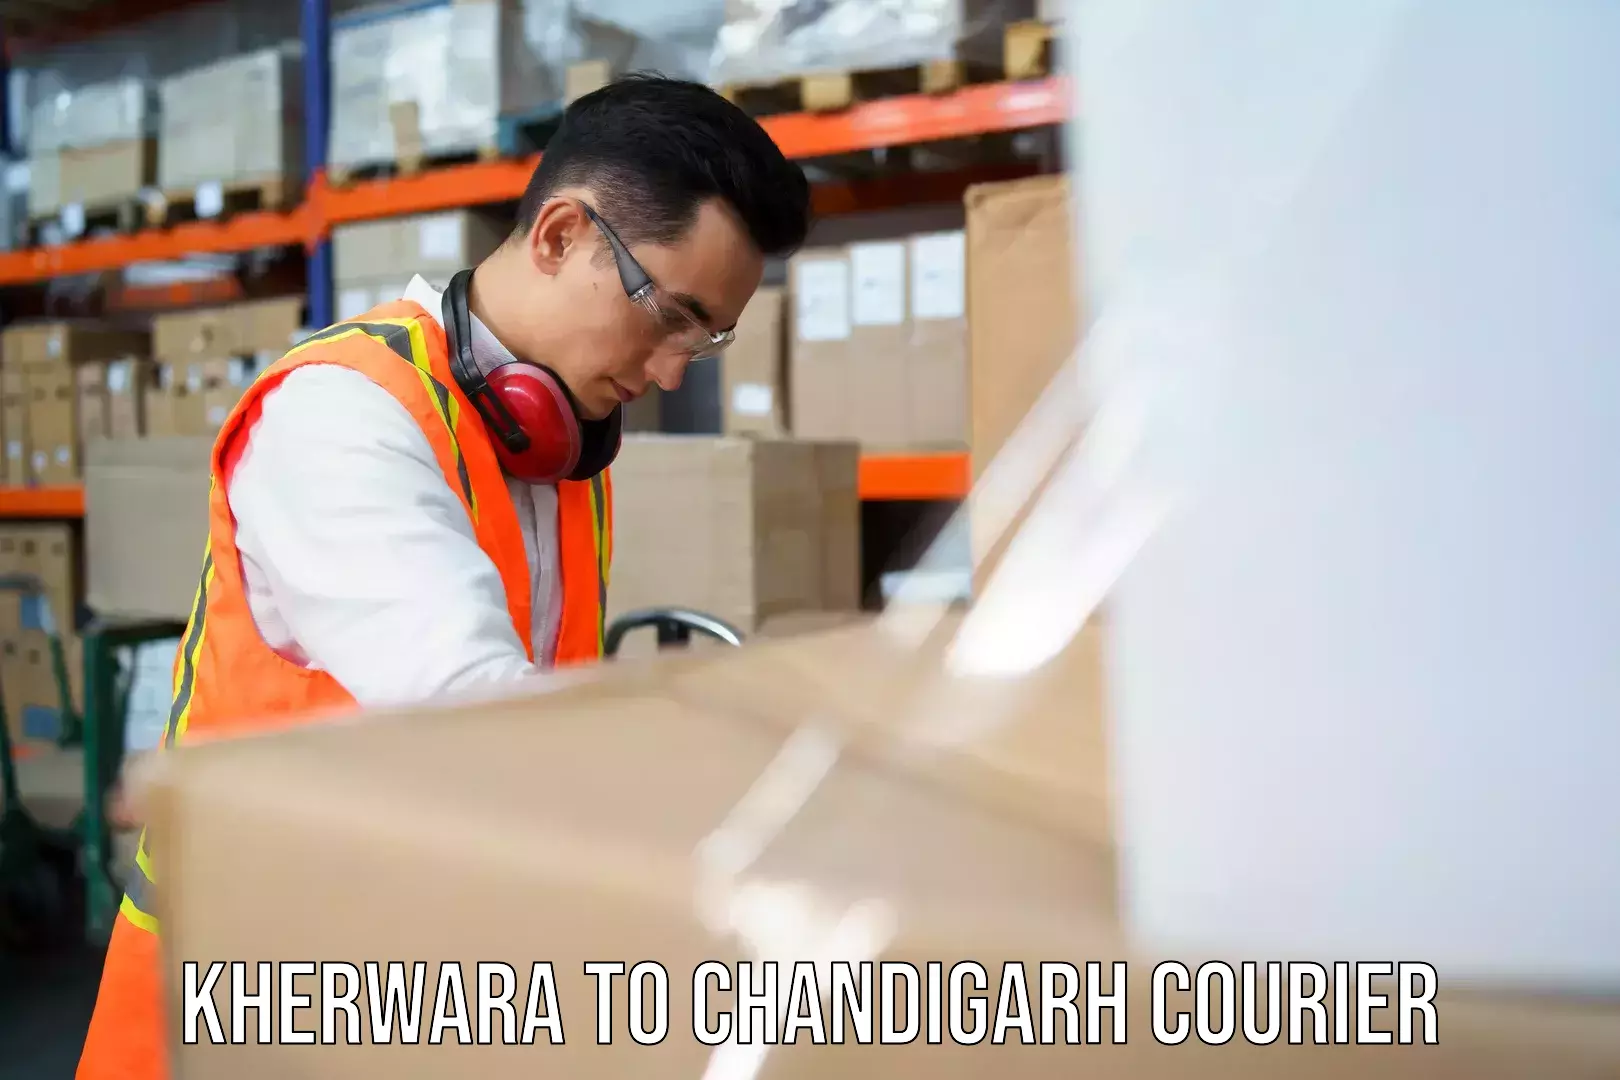 Express courier capabilities Kherwara to Chandigarh